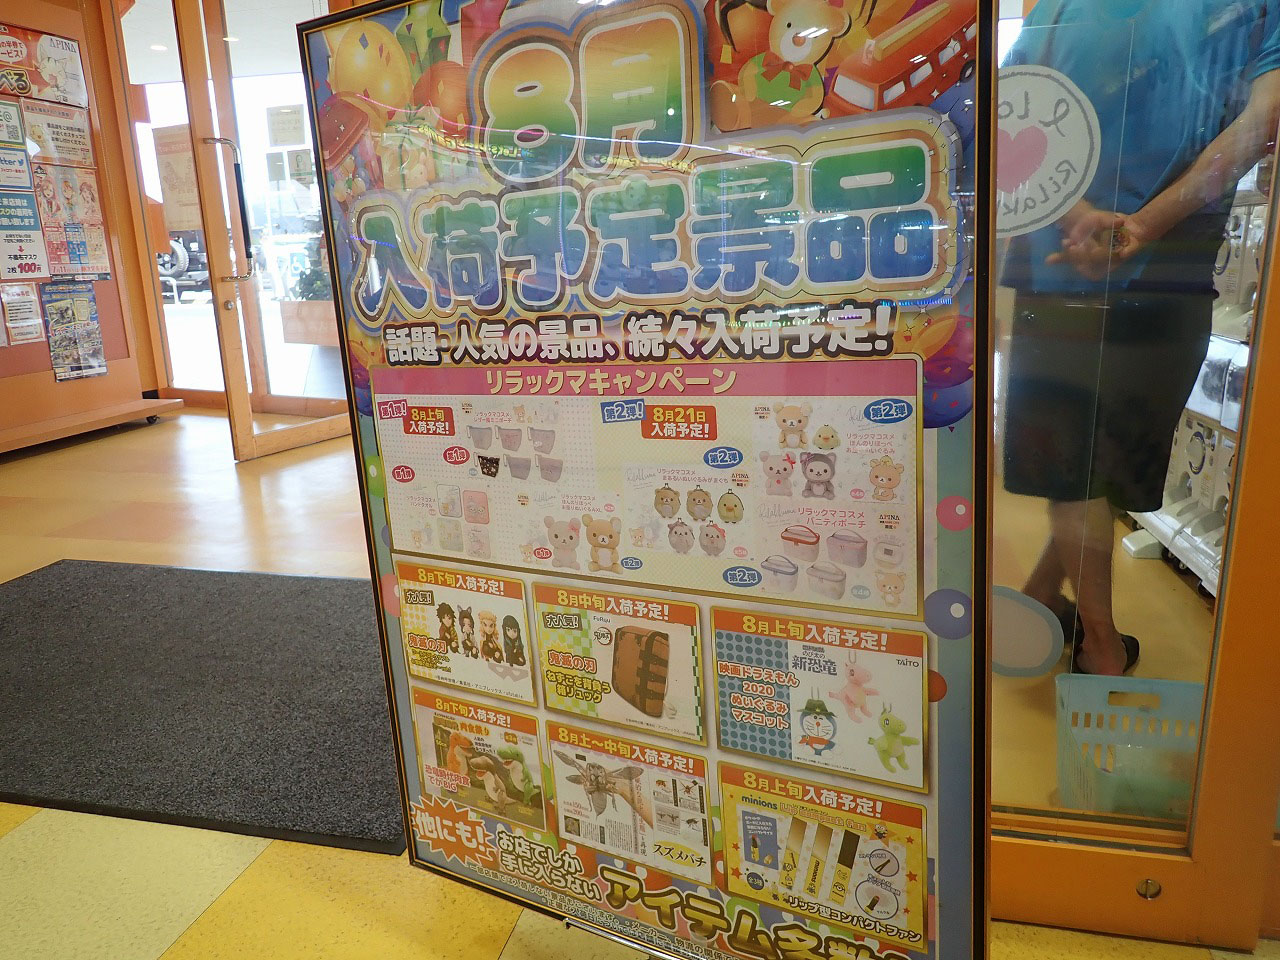 ゲームセンター『アピナ川越店』の2020年8月のUFOキャッチャー景品の入荷予定のお知らせ